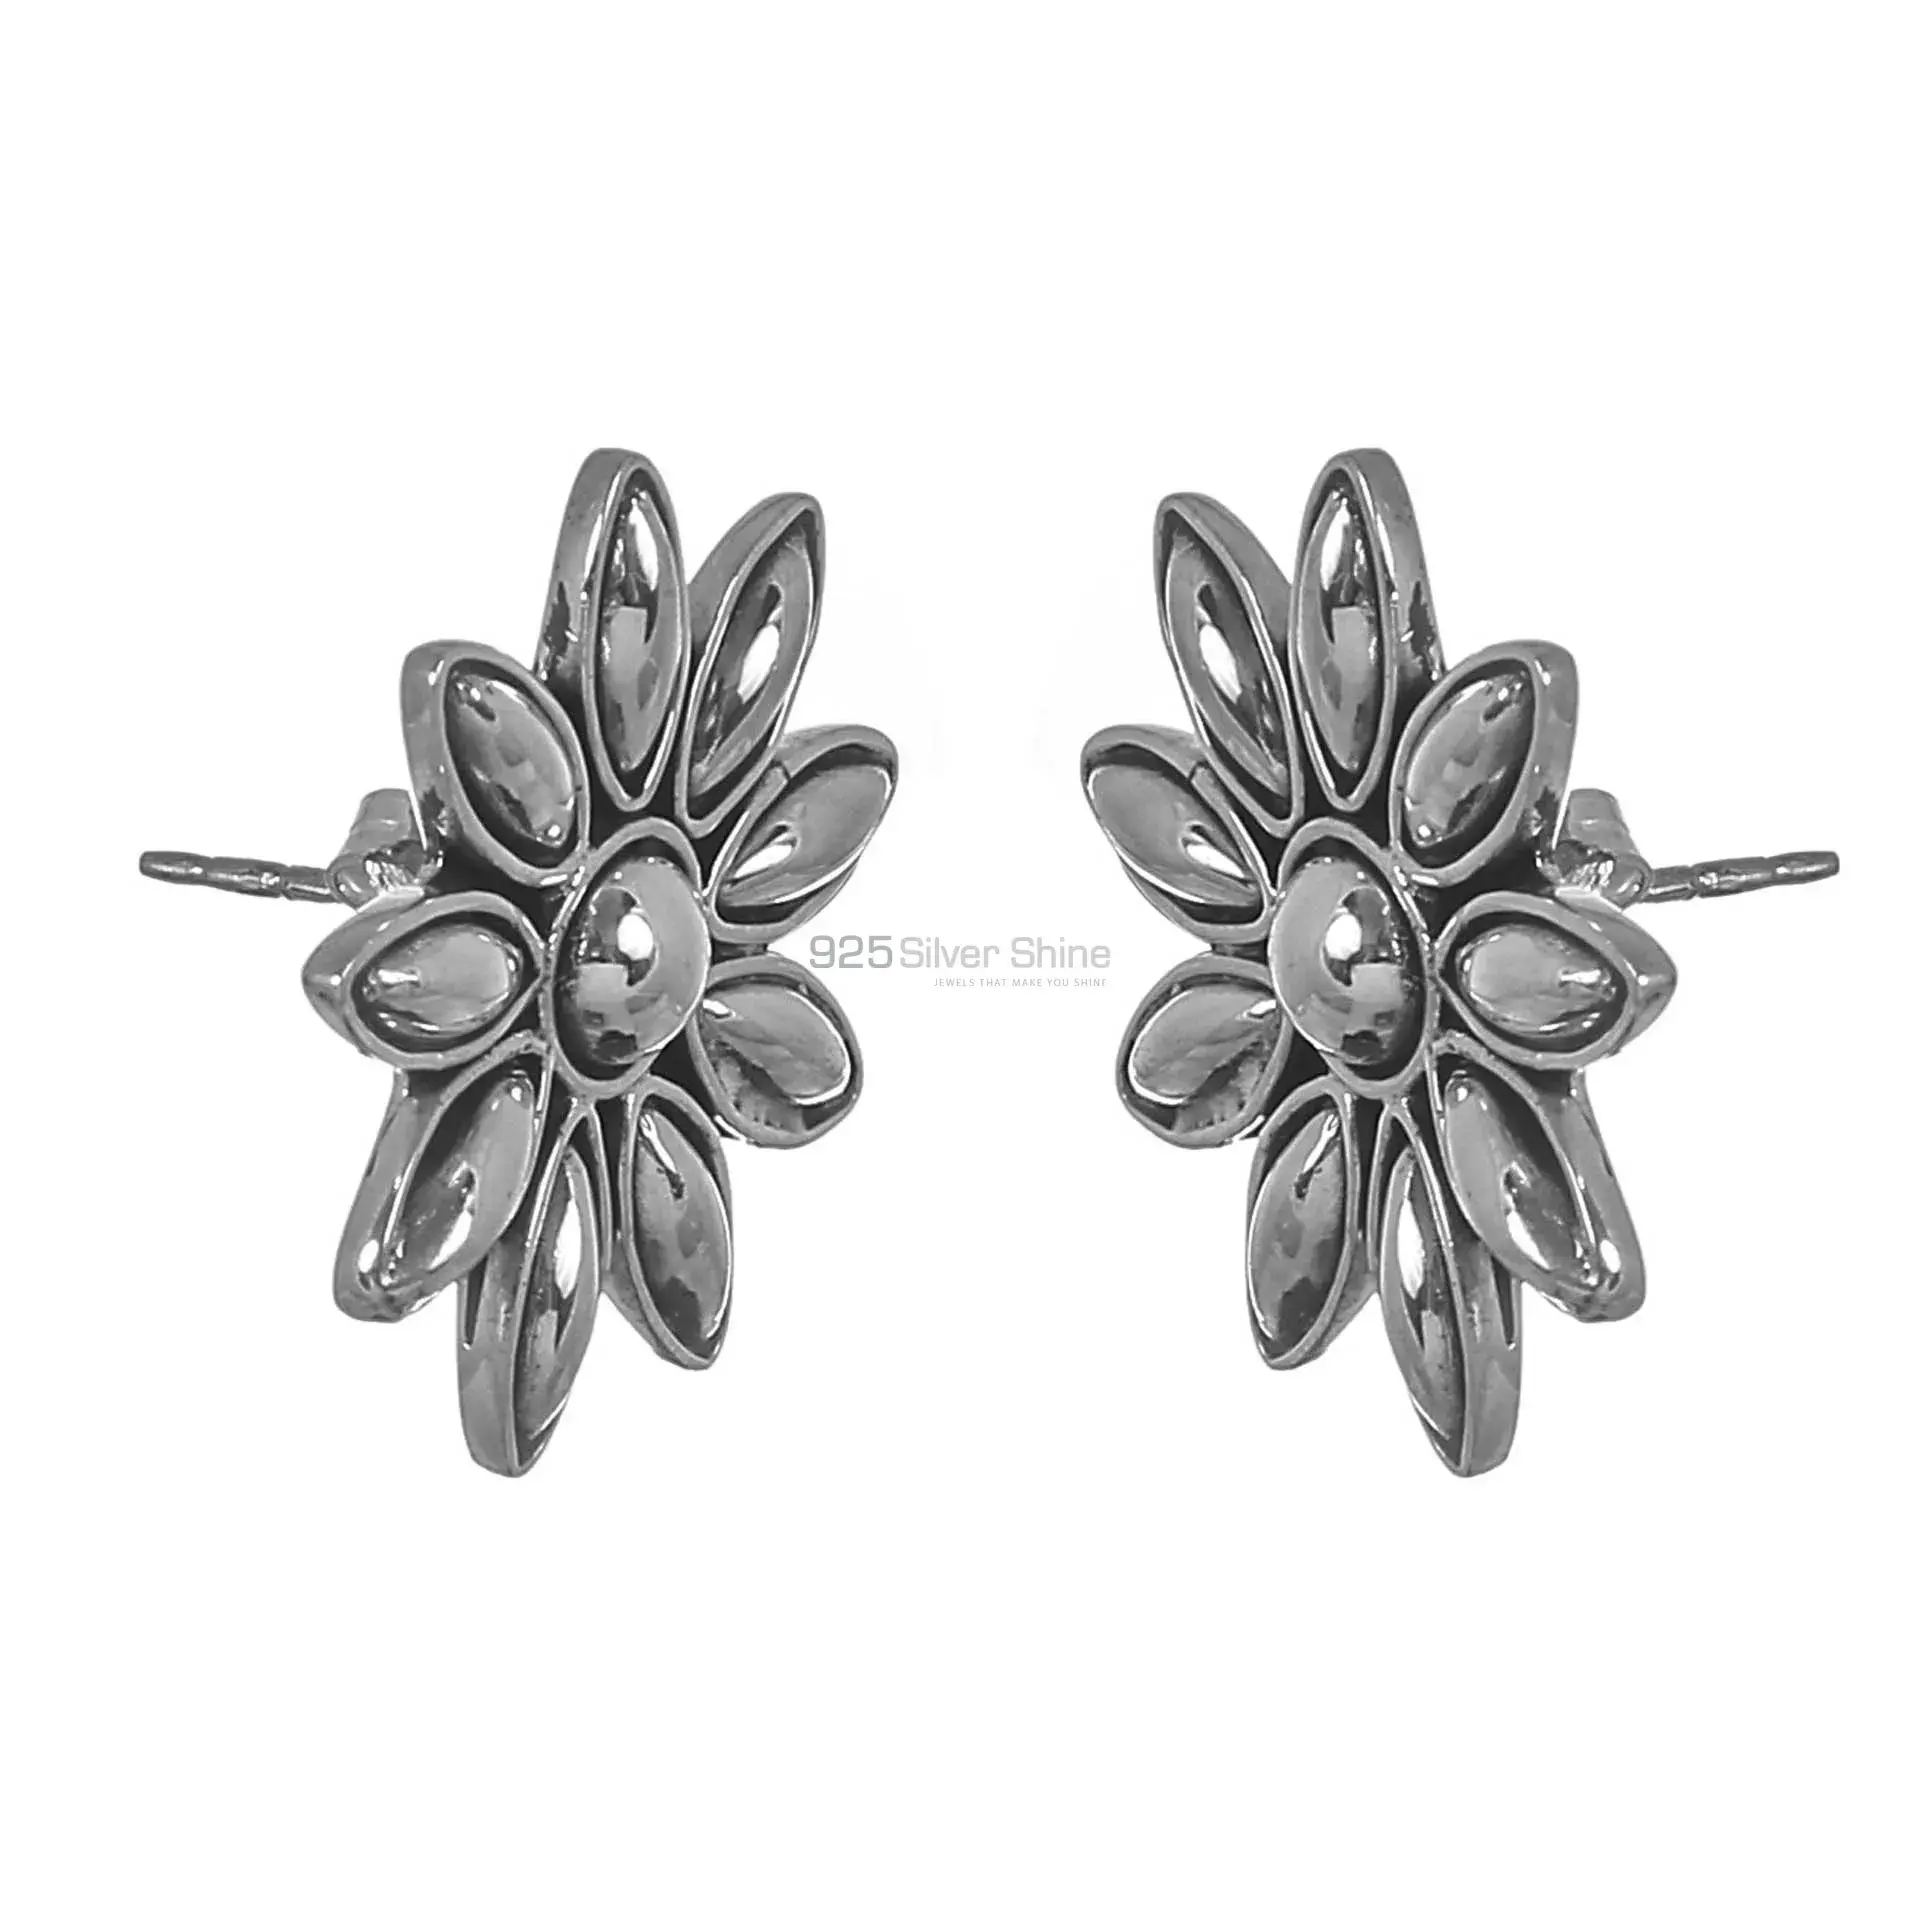 Star Design Handmade Earrings In 925 Sterling Silver 925SE310_0